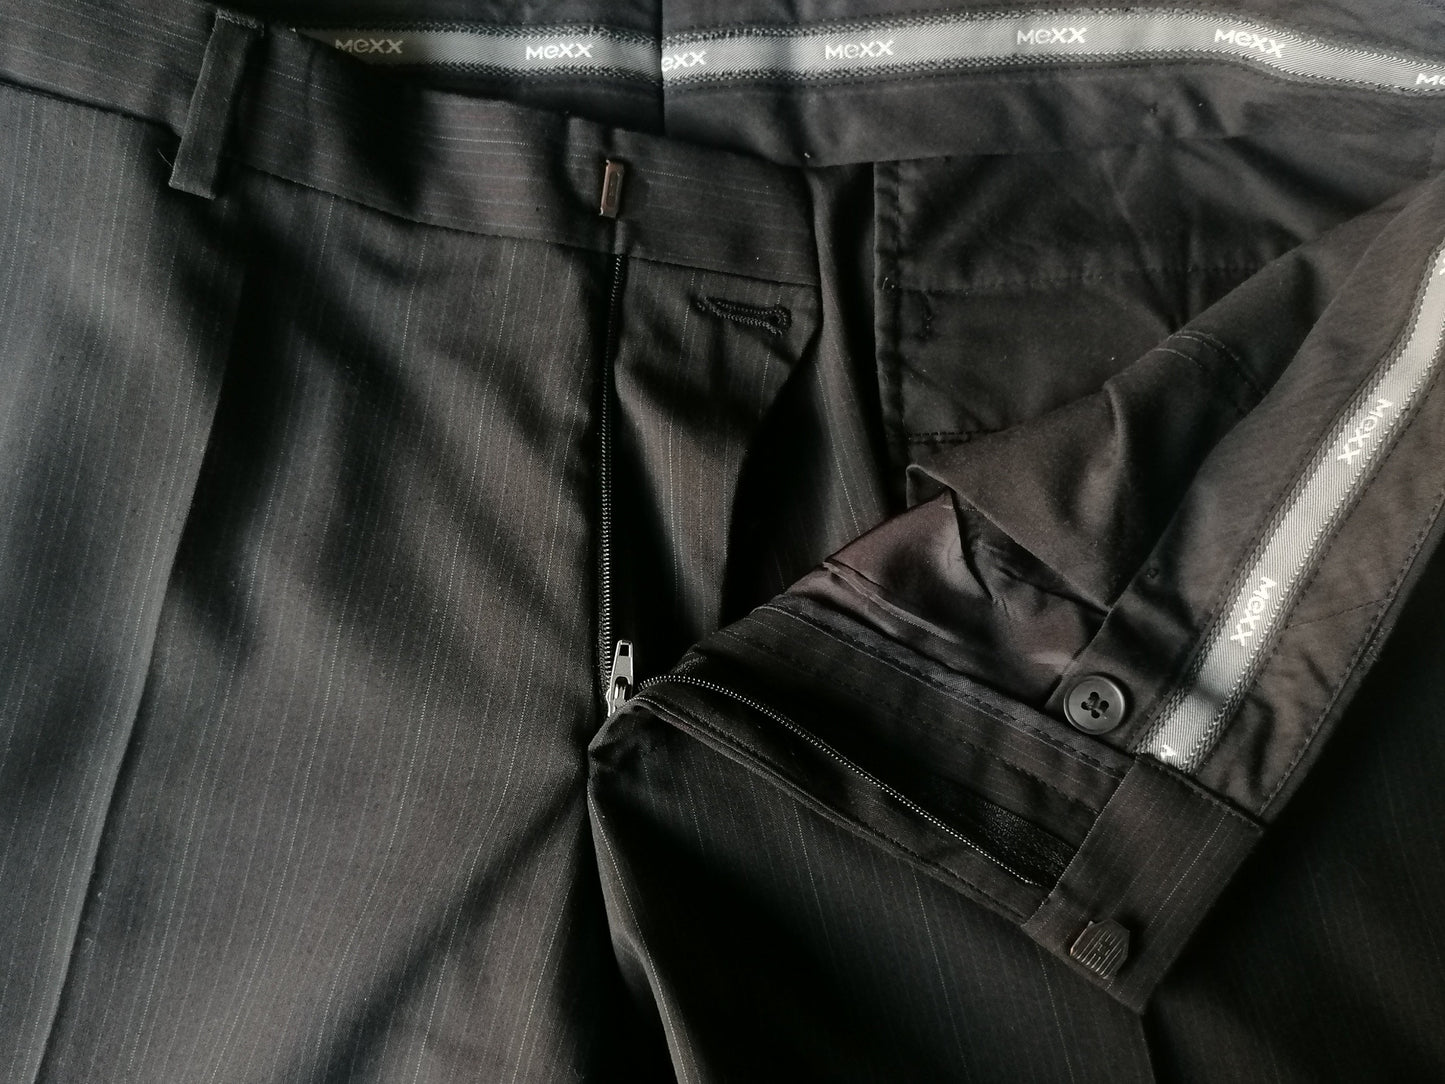 Mexx Kostüm. Schwarz mit burgunderblauem und weißem dünnem Streifen. Größe 50 / M.